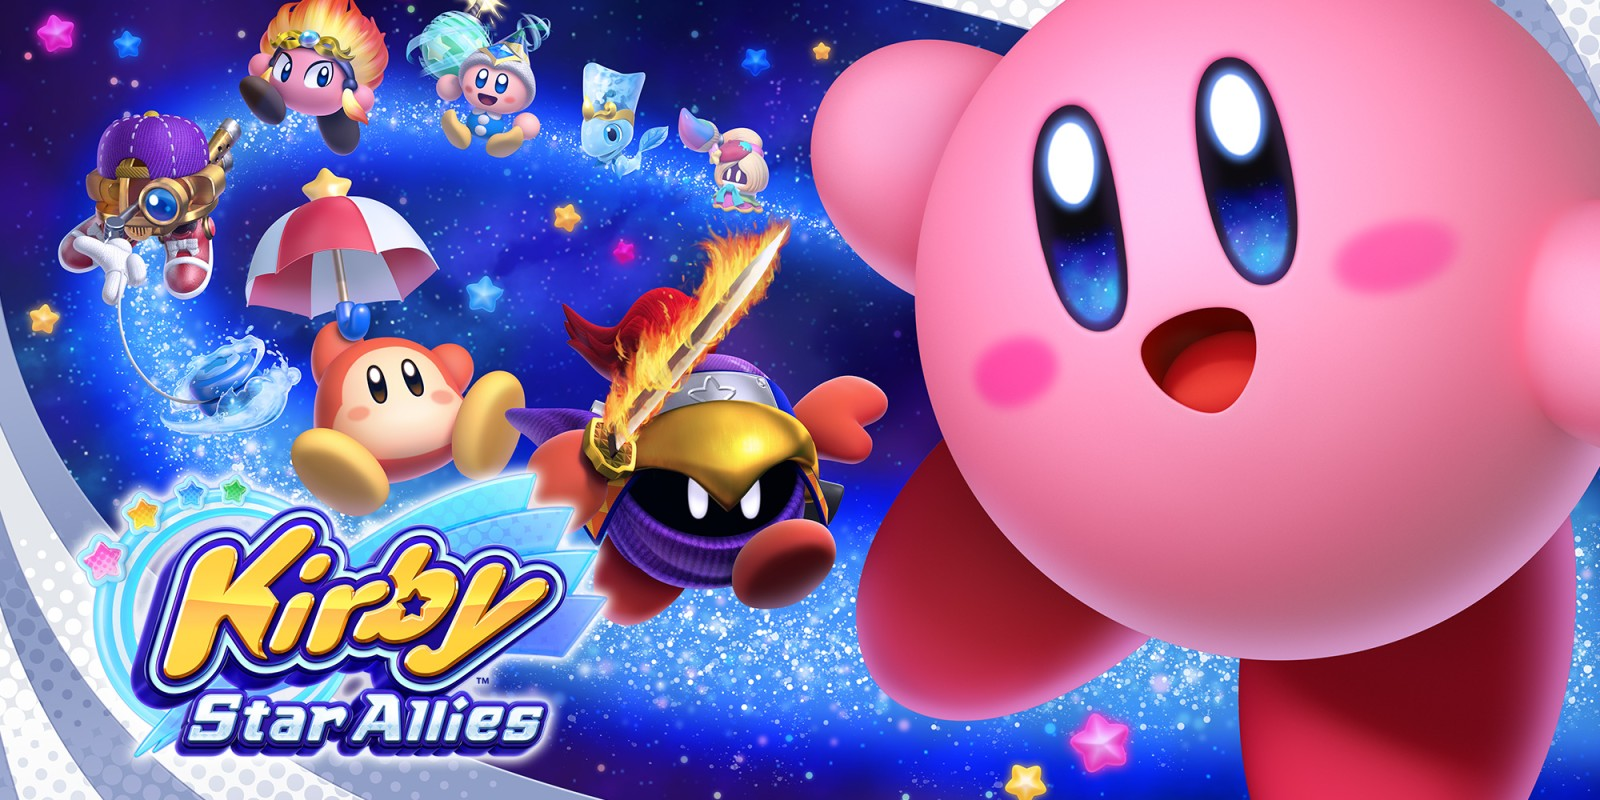 Kirby Star Allies (Nintendo Switch, 2018)